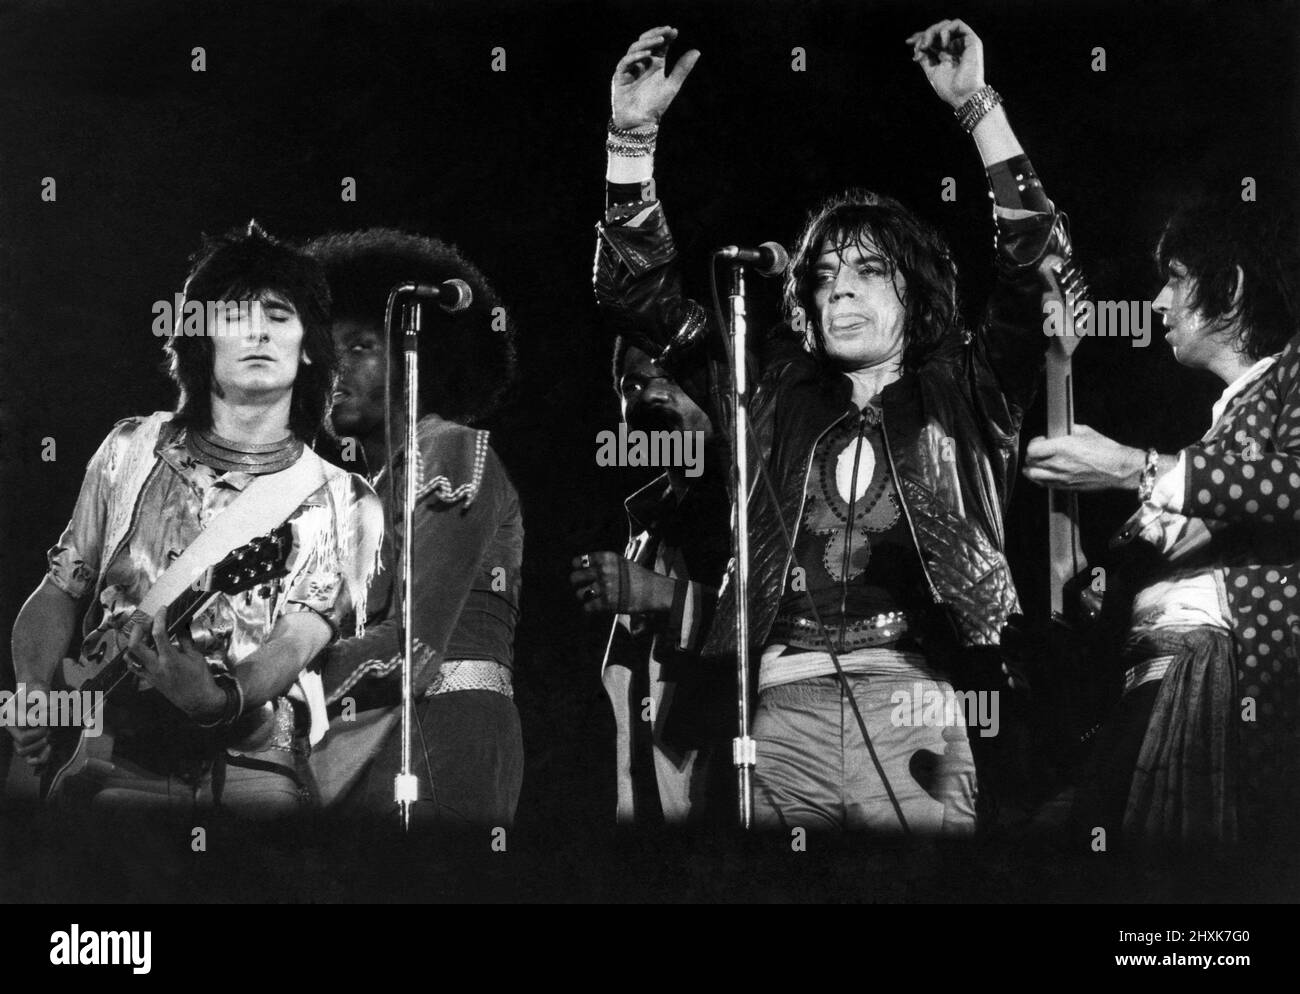 Rolling Stones au Krebworth Pop Festival 21 août 1976 Mick Jagger sur scène avec Ronnie Wood (à gauche) et Keith Richard; Billy Preston est derrière Ronnie. Août 1976 Banque D'Images